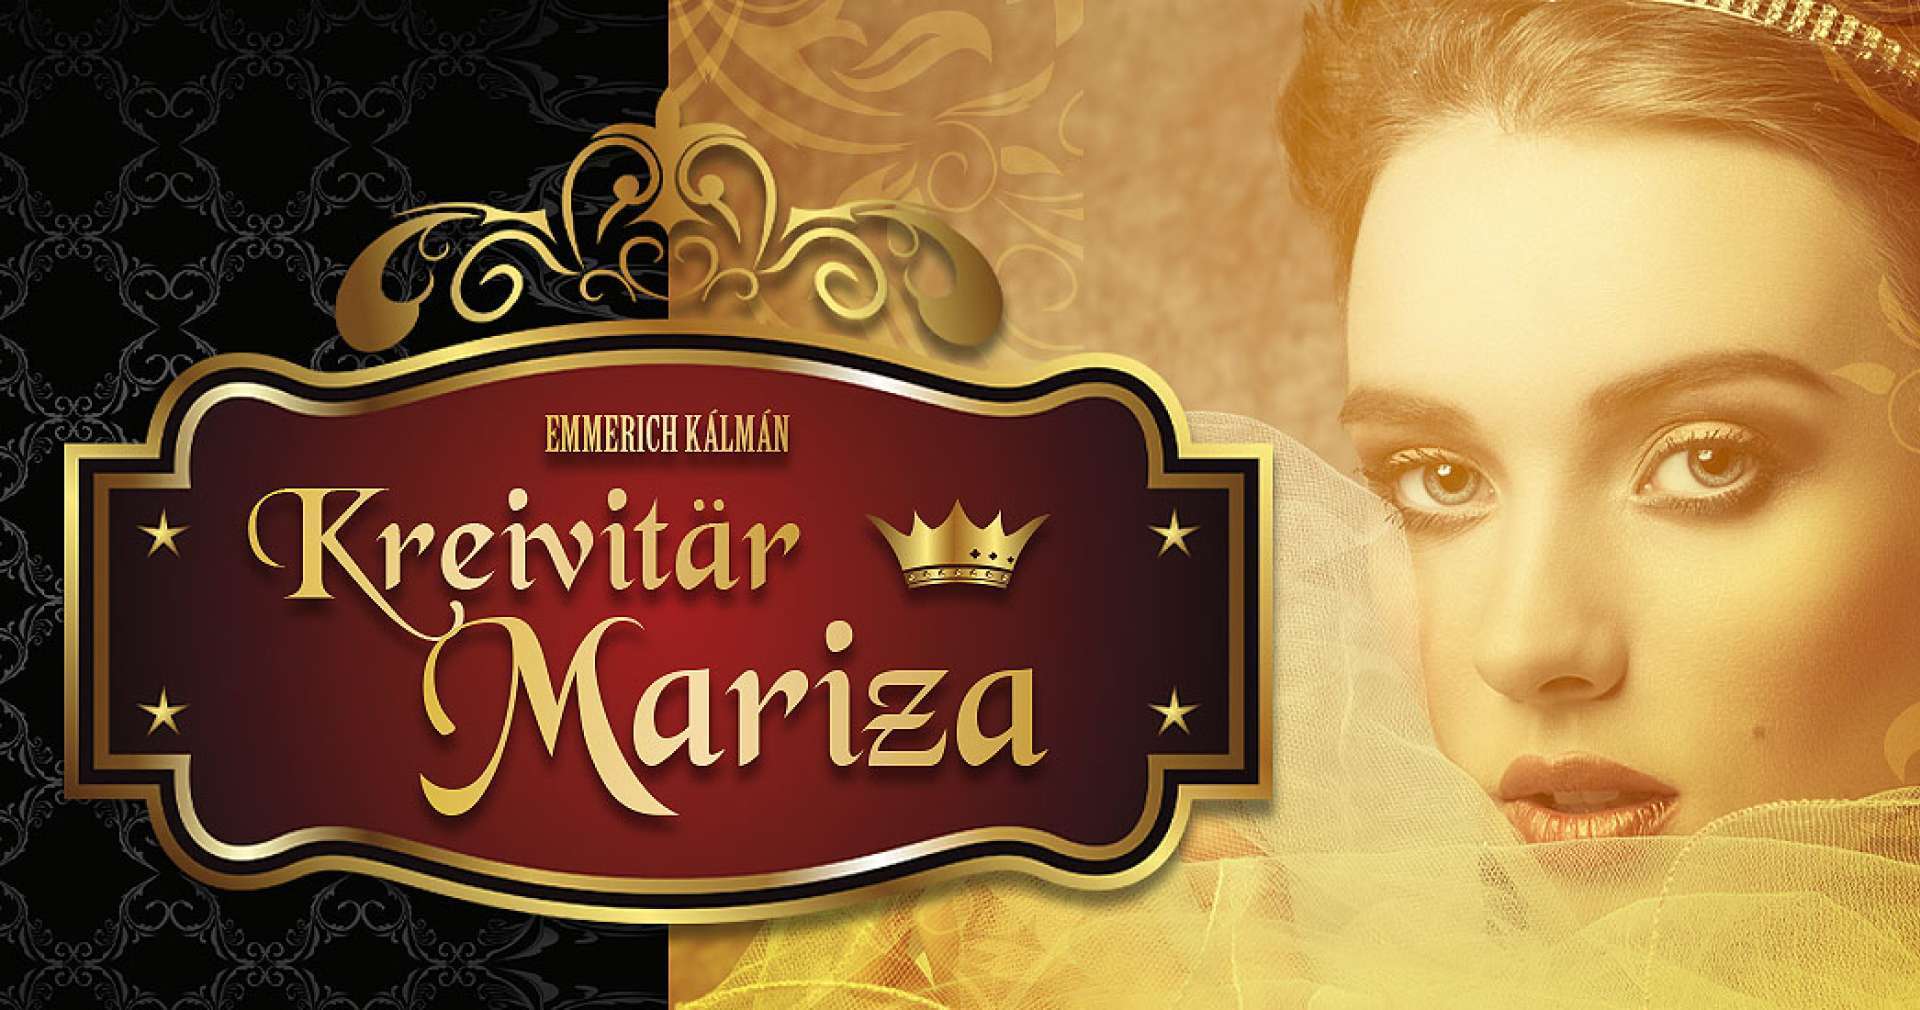 Kreivitär Mariza -operetti